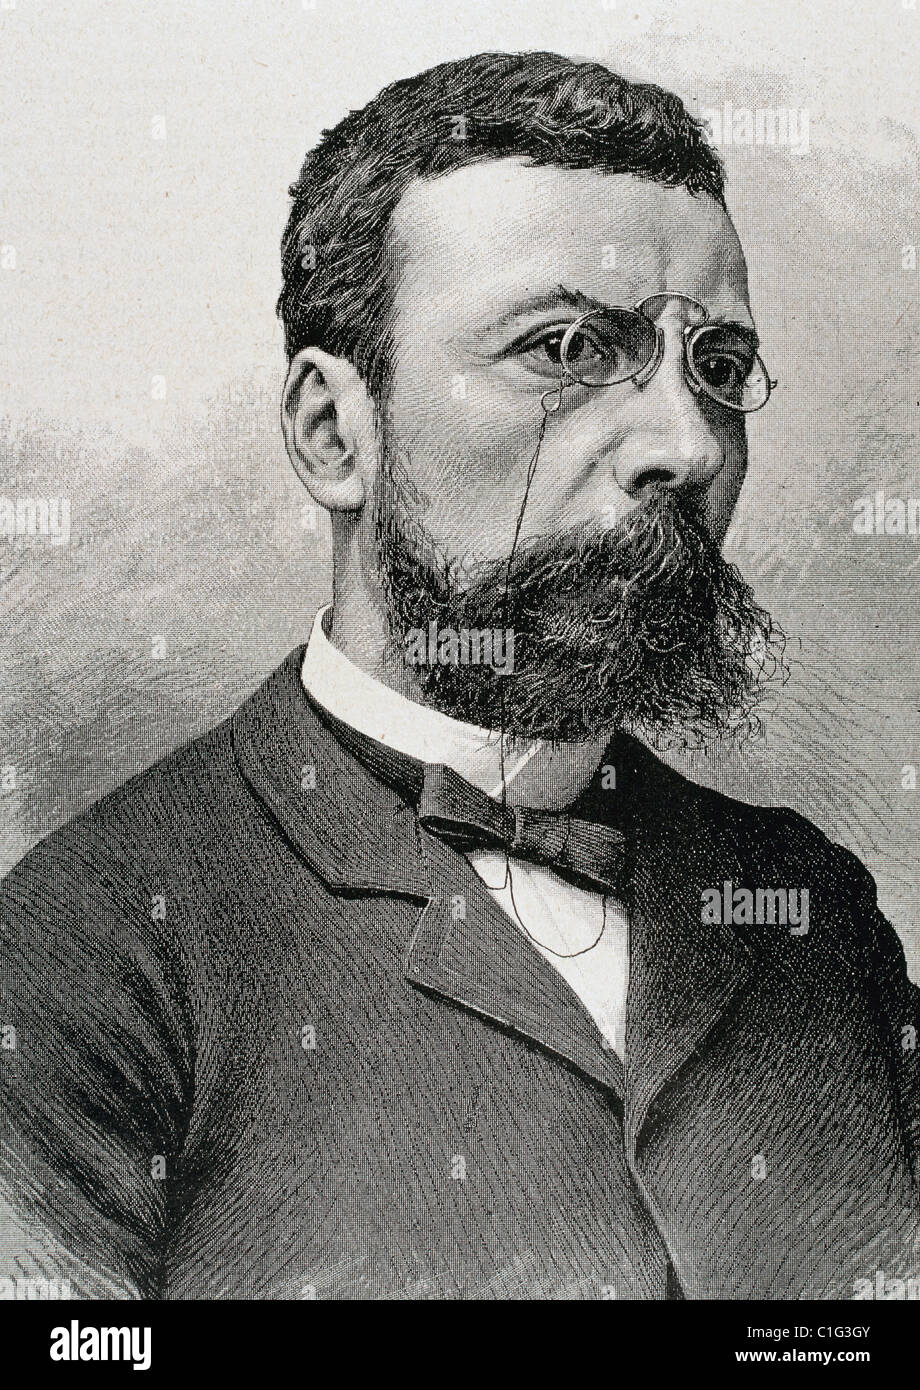 Angel Guimerá (1849-1924). Dramatiker und Dichter in der katalanischen Sprache. Gravur. Stockfoto